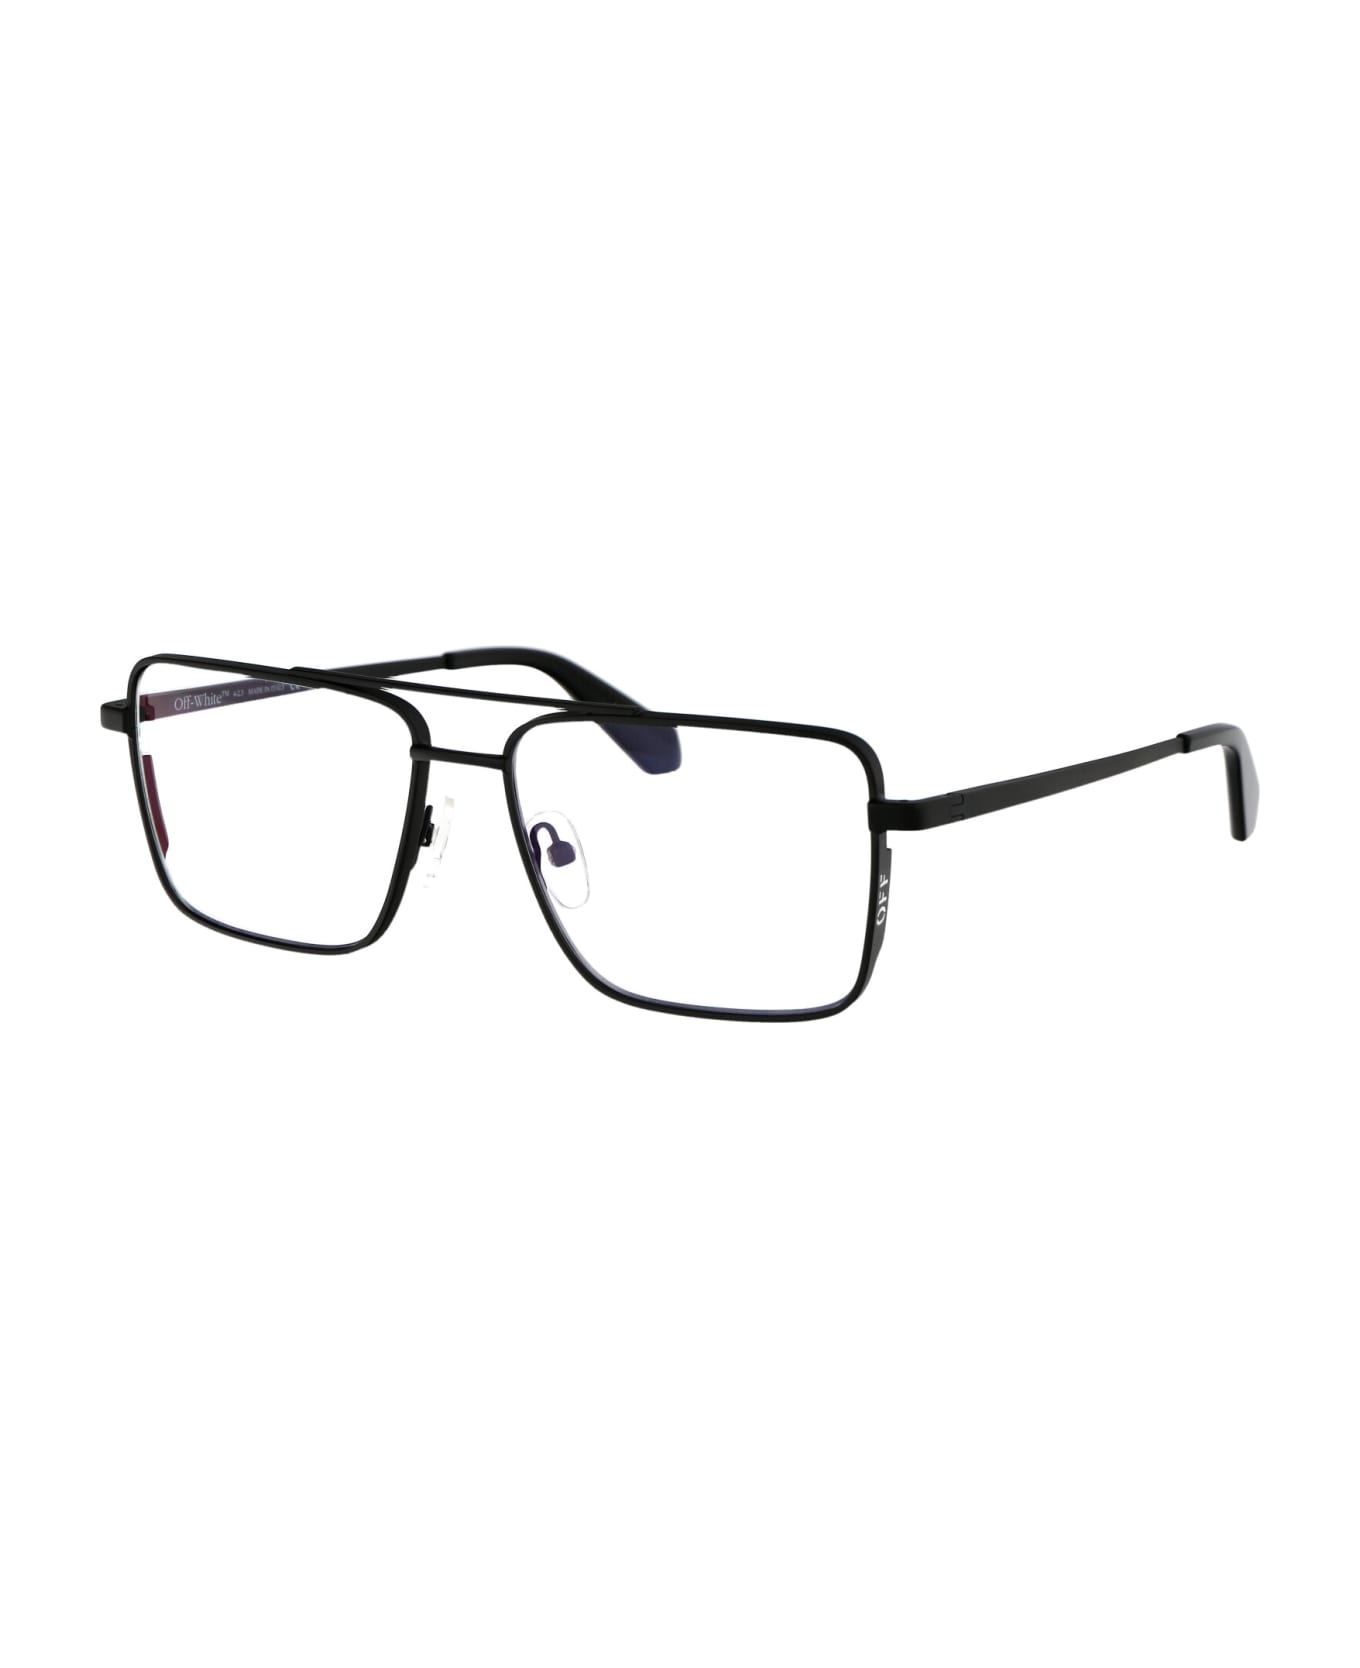 Off-White Optical Style 66 Glasses - 1000 BLACK アイウェア